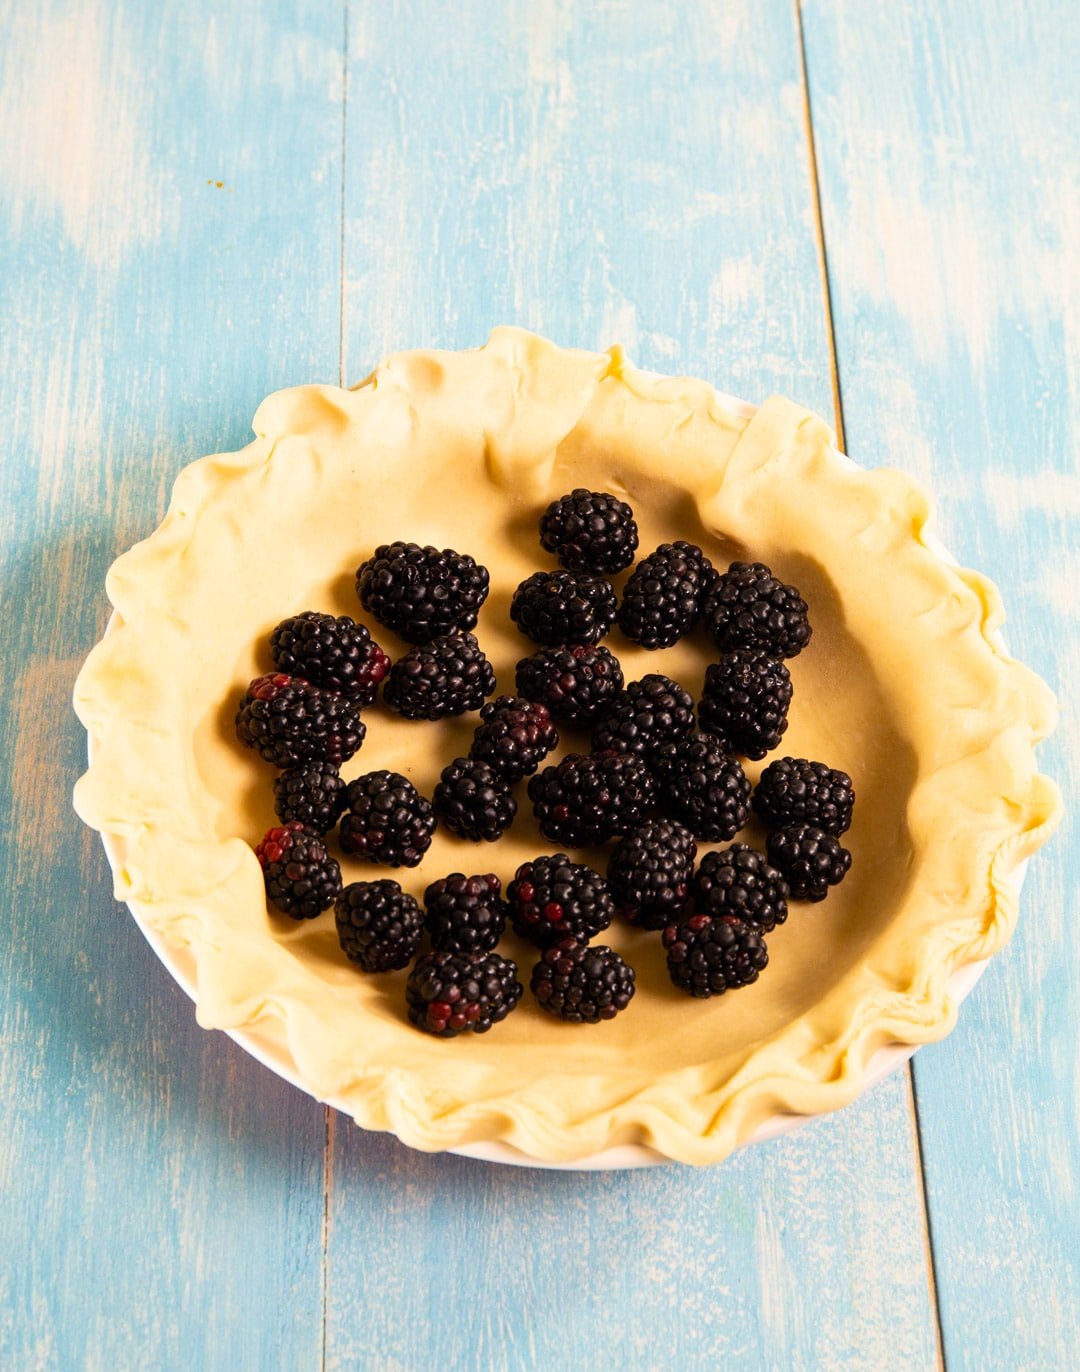 Fresh blackberries in unbaked pie crust.